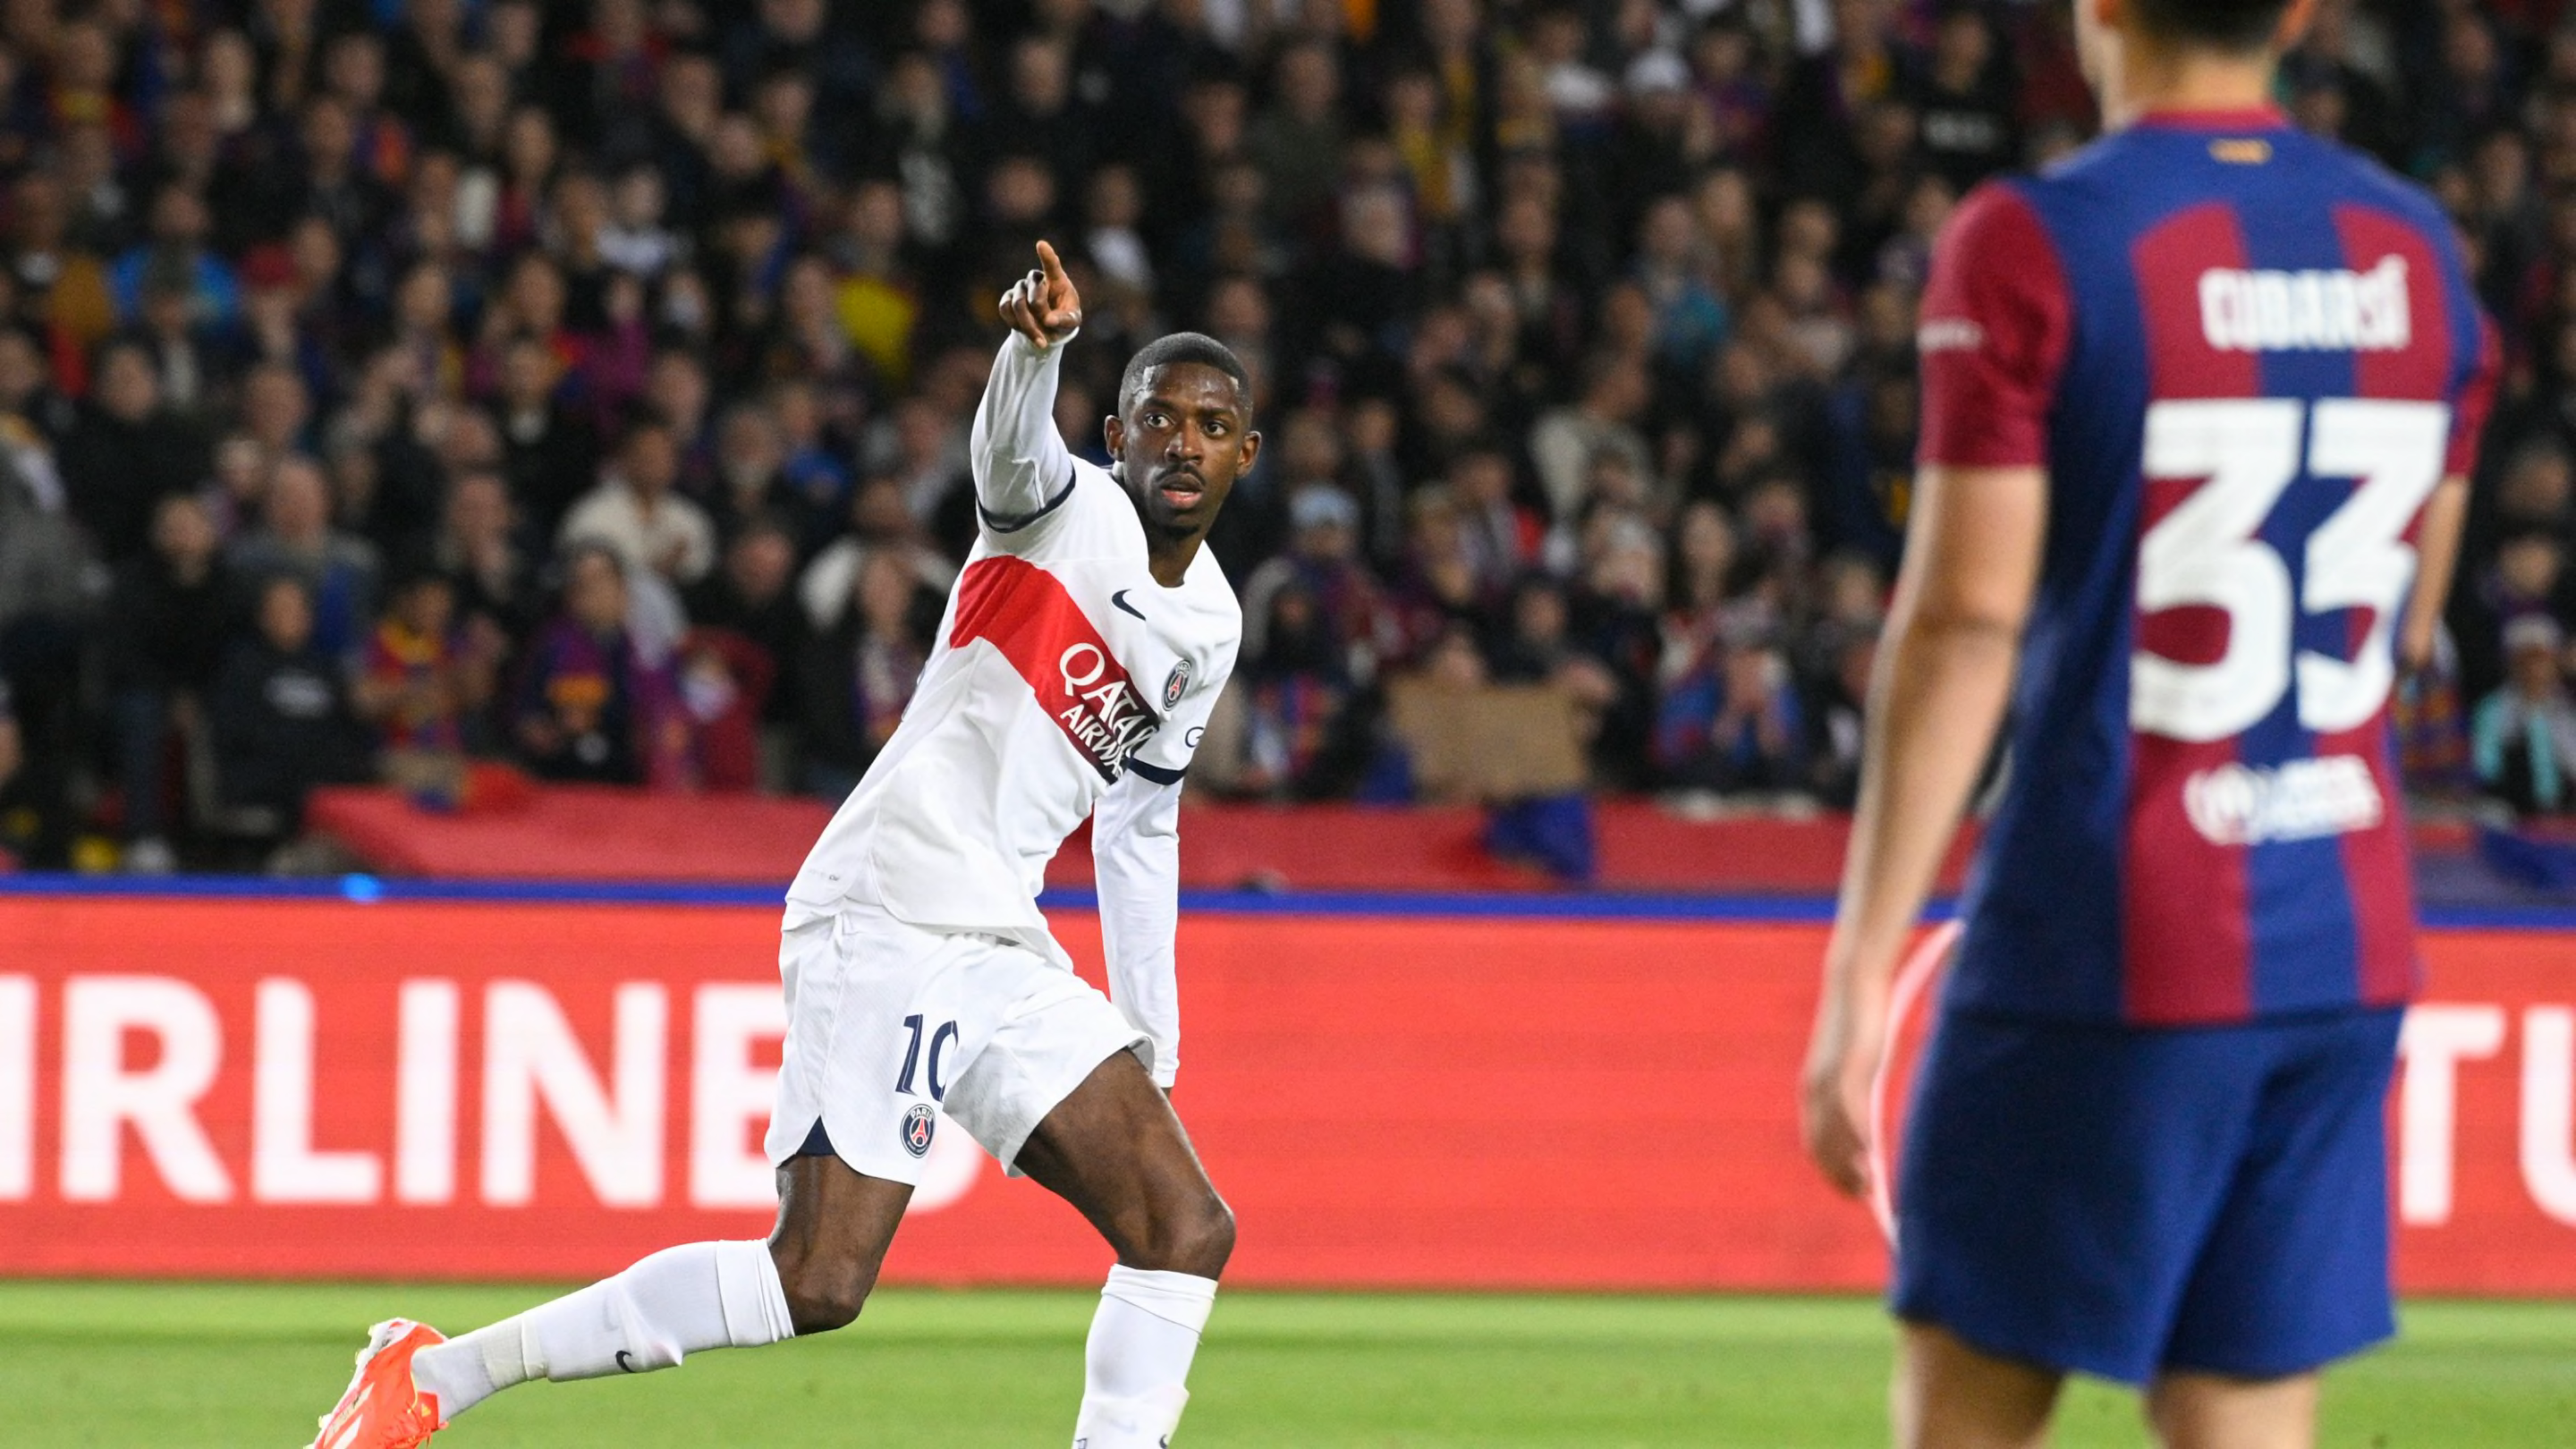 FC Barcelone - PSG : L'échange génial entre Ousmane Dembele et Malik Bentalha avant le choc a fuité